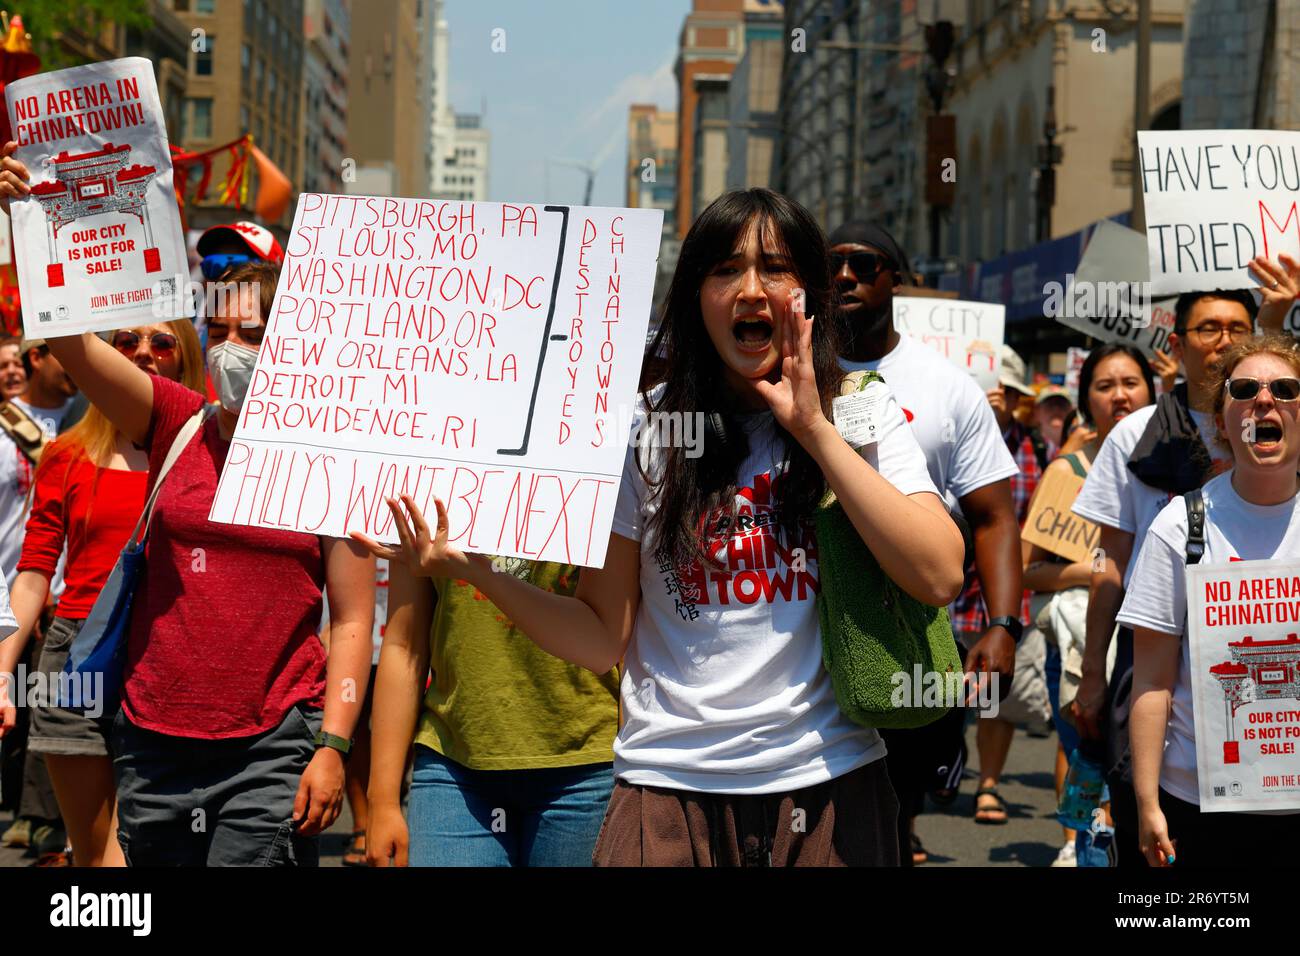 10 juin 2023, Philadelphie. Pas d'arène dans Chinatown proteste march. Une femme détient une liste des Chinatrust détruits aux États-Unis (voir add'l info). Banque D'Images